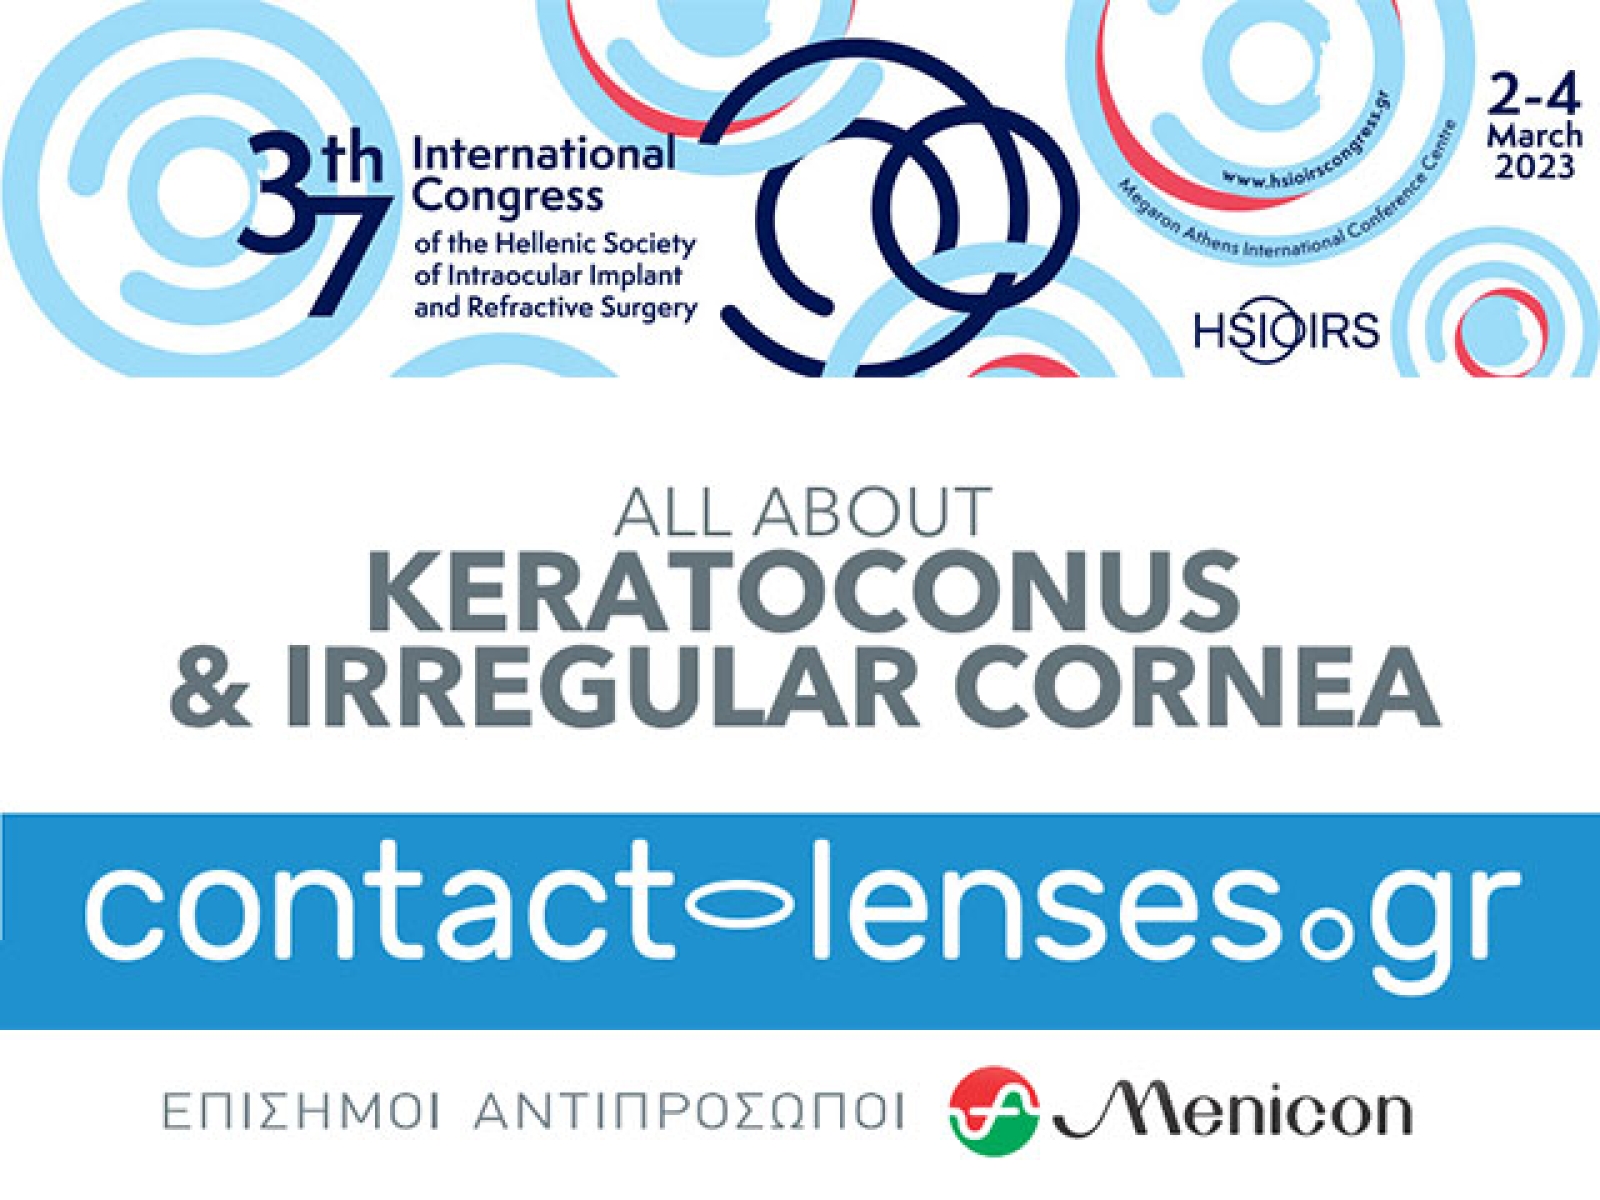 Η Contact-lenses.gr στο 37ο Διεθνές Συνέδριο  Ενδοφακών &amp; Διαθλαστικής Χειρουργικής